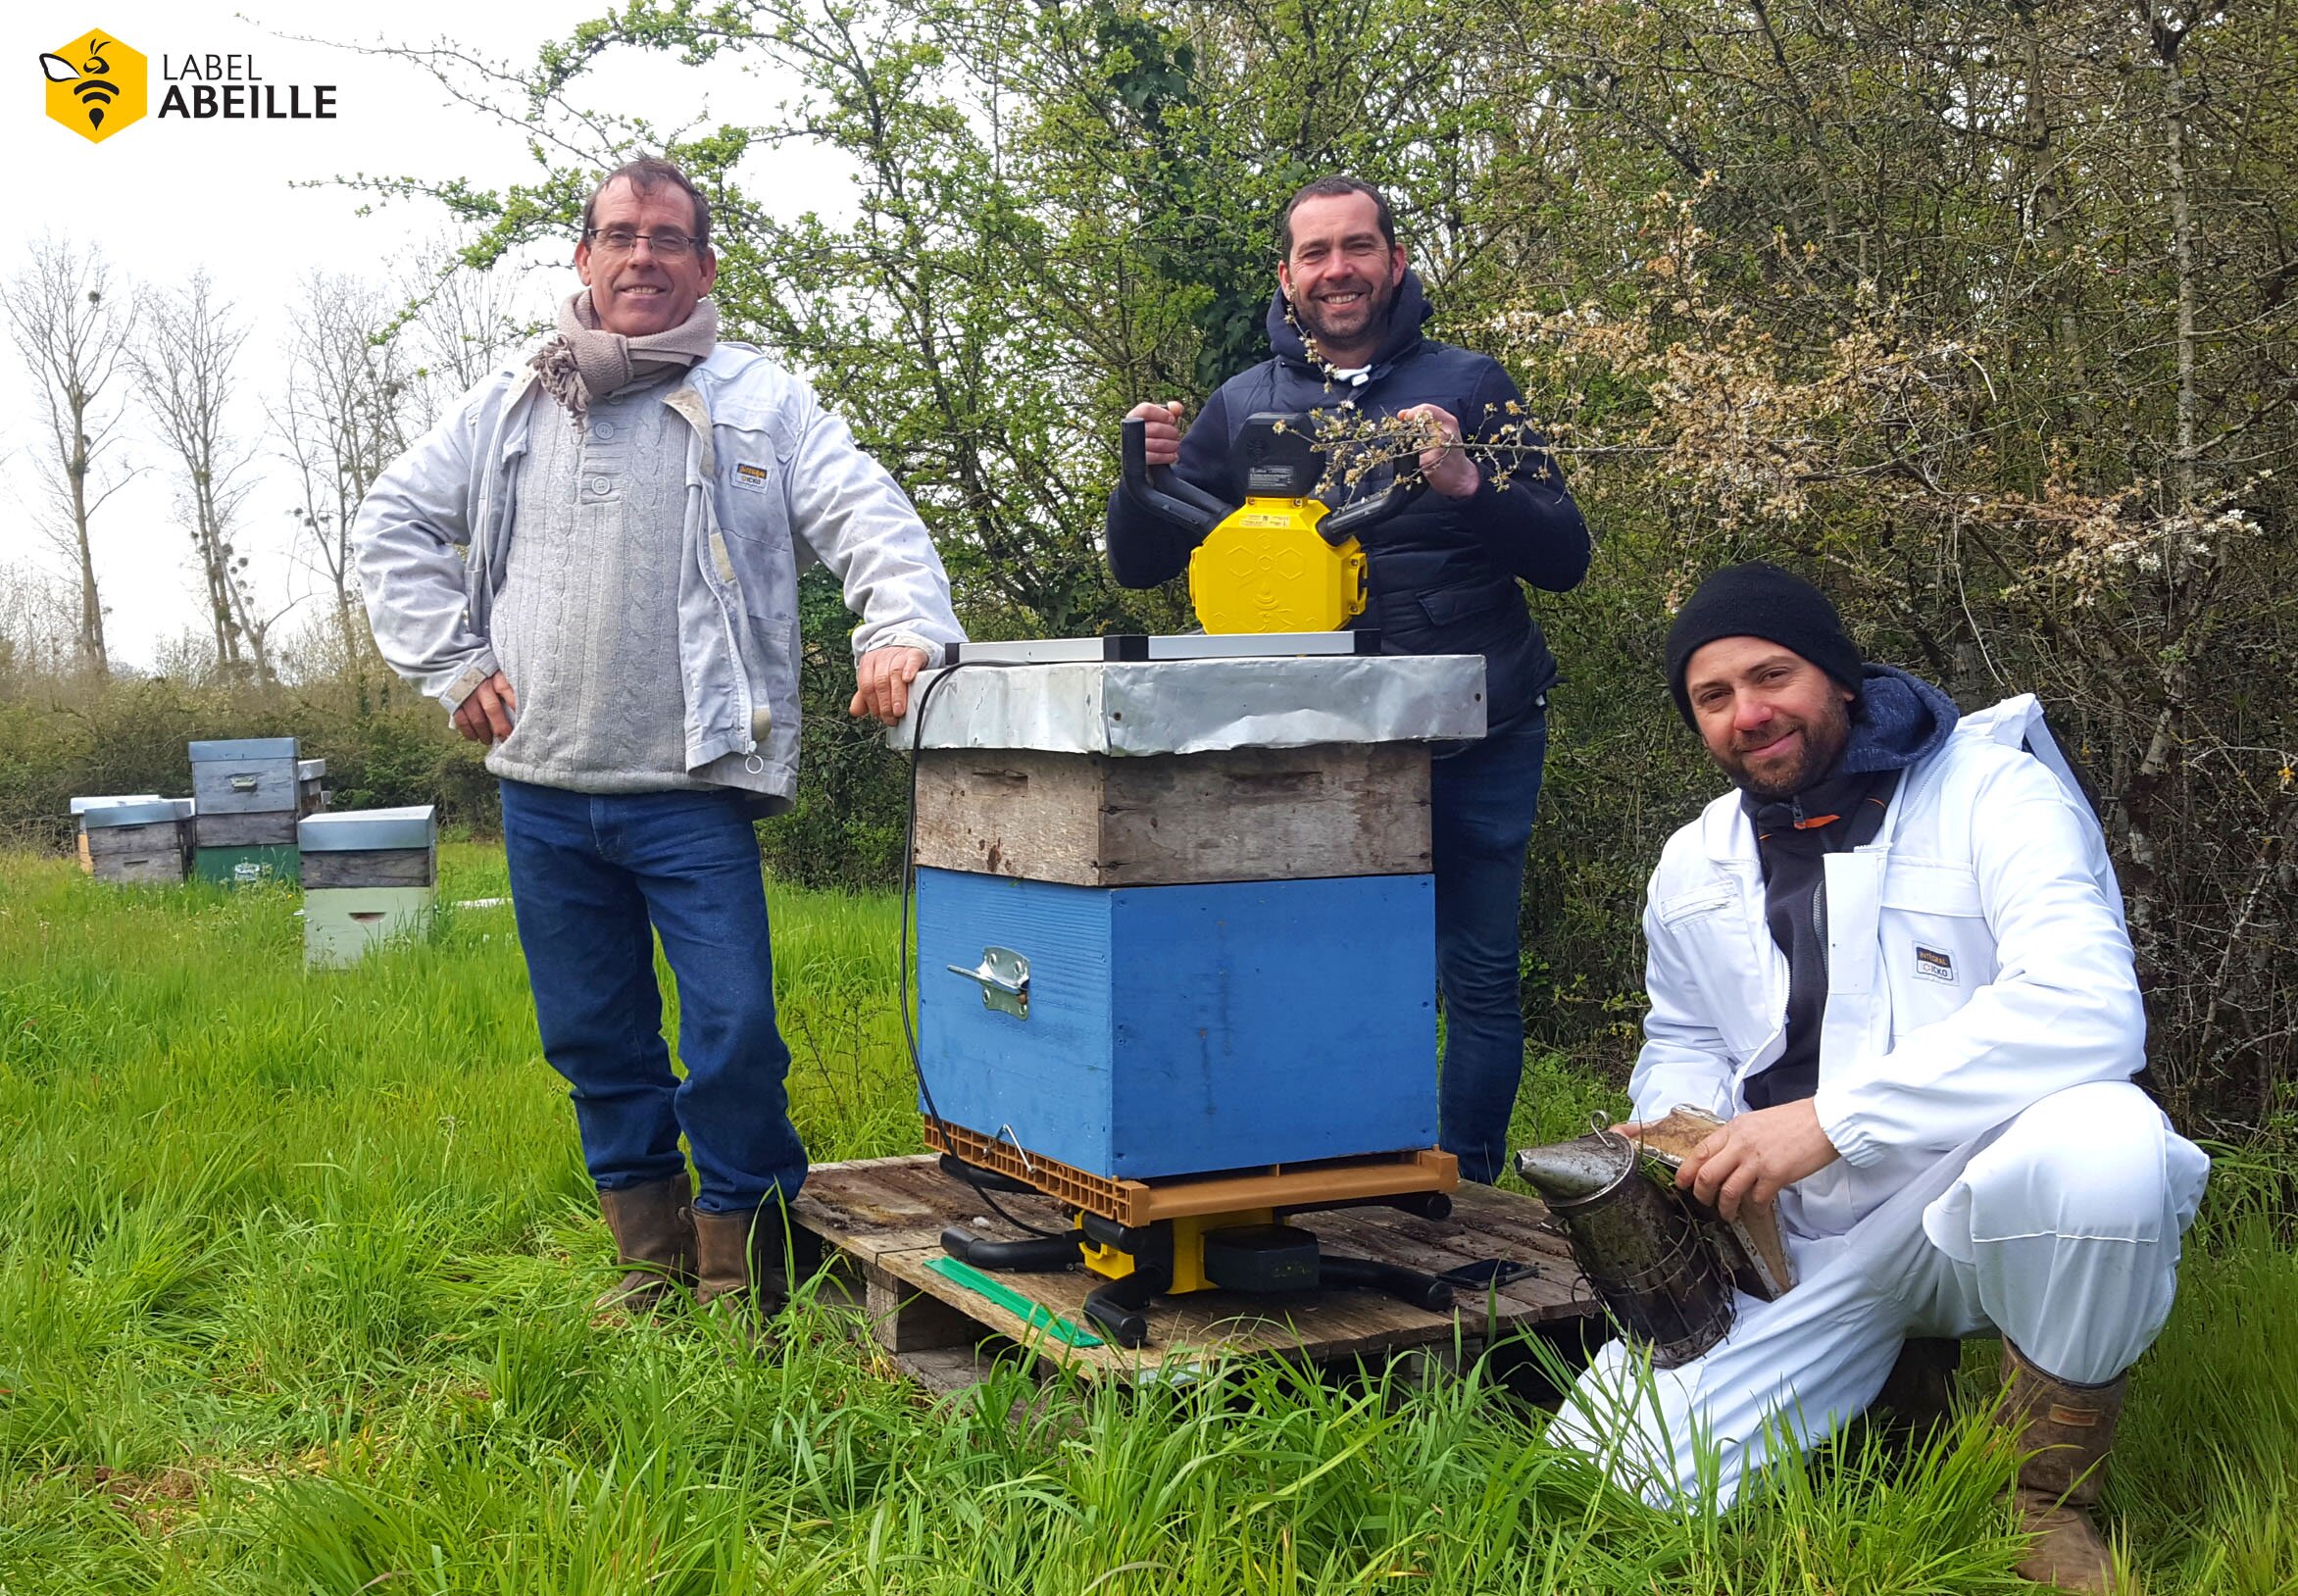 LABEL ABEILLE - Famille RODRIGUES VIDEIRA, apiculteurs connectés à Niort